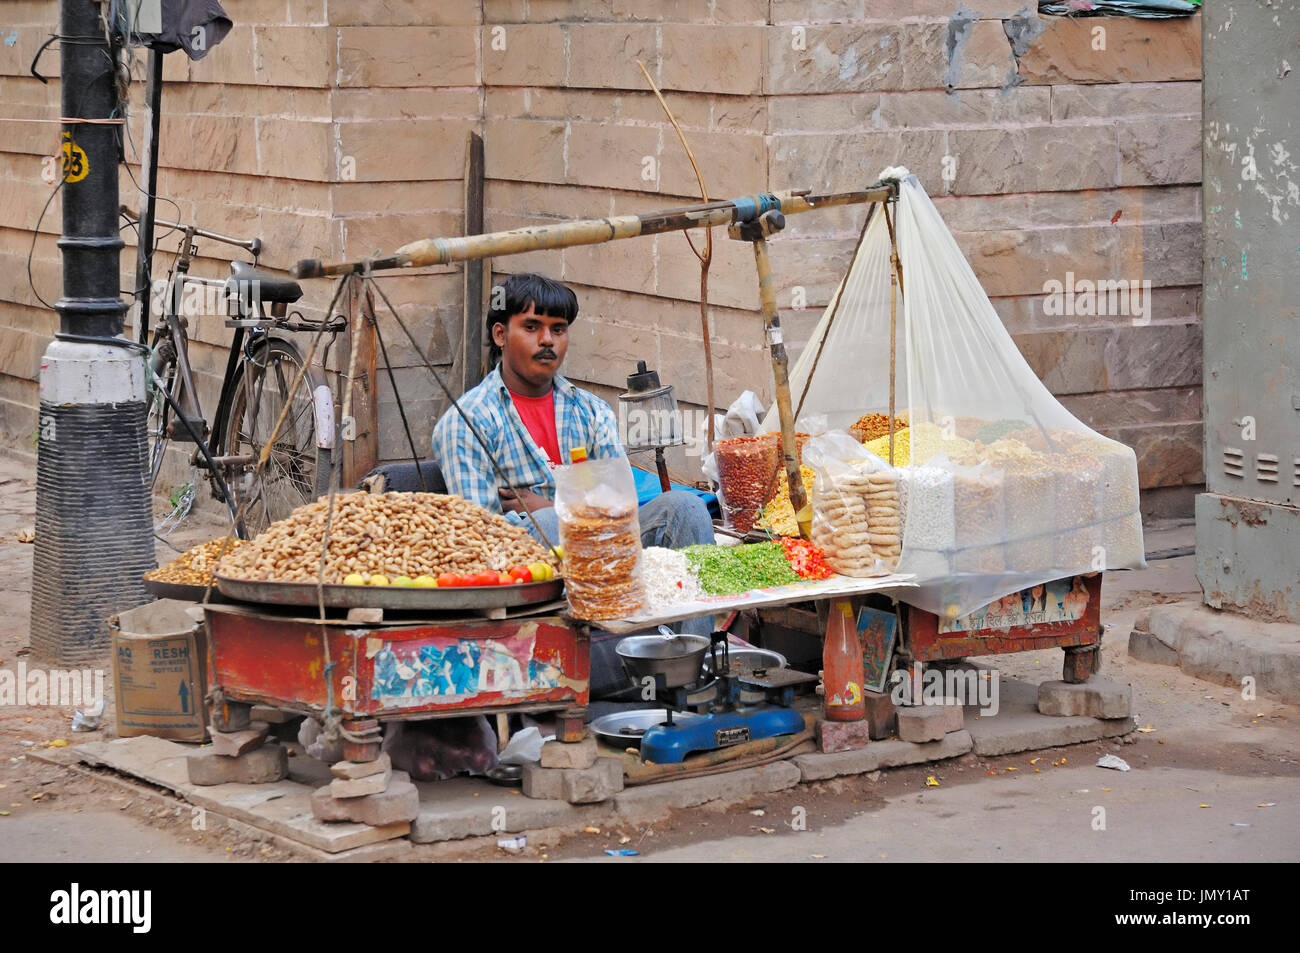 Venditore ambulante, New Delhi, India | Strassenhaendler, Neu-Delhi, Indien Foto Stock